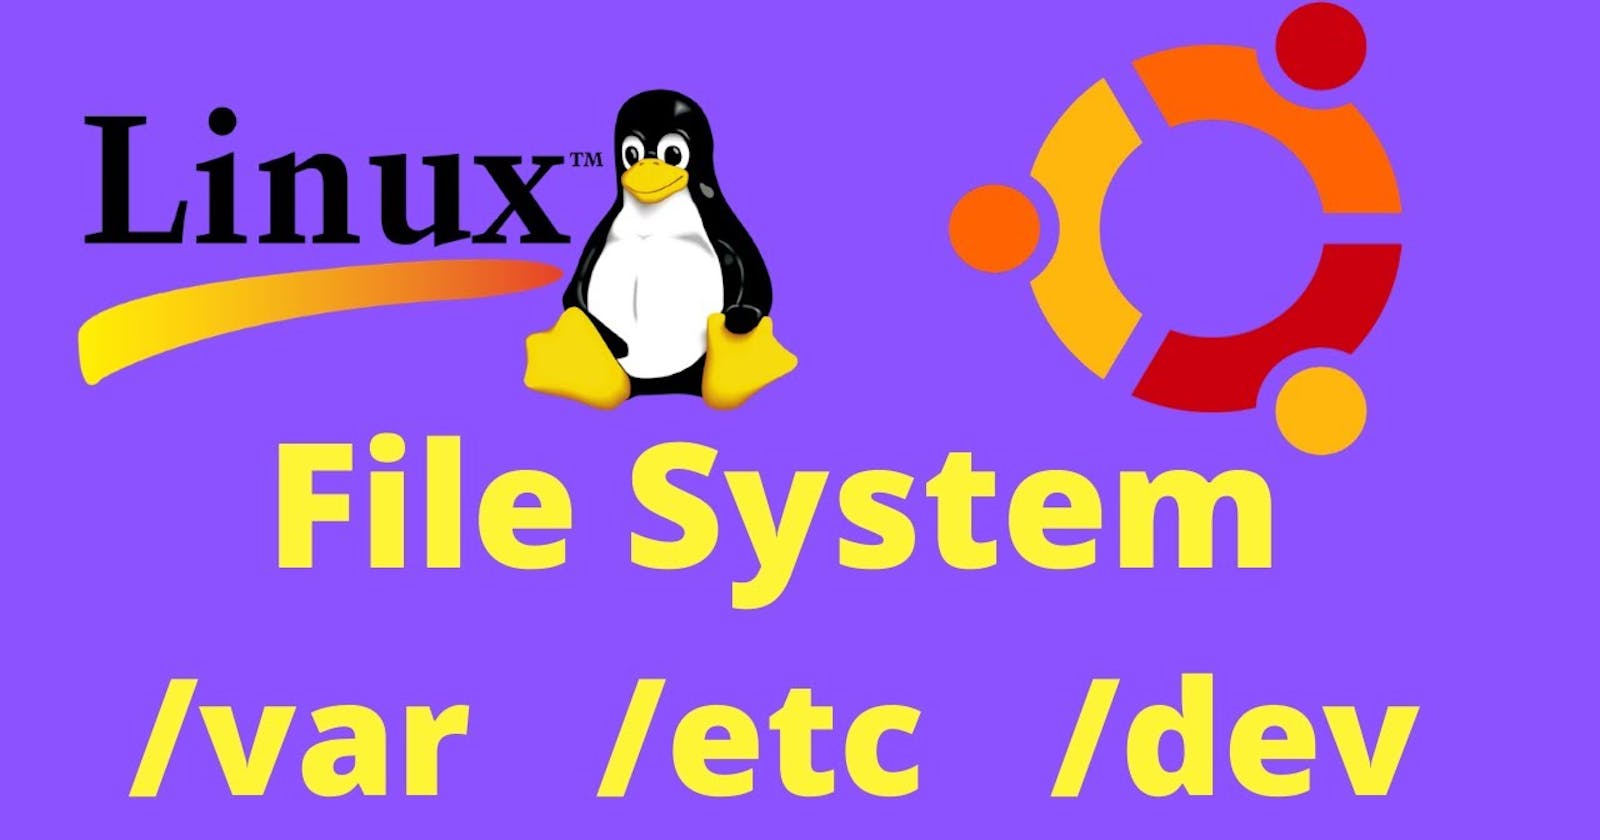 Mastering Essential Linux Commands for DevOps | Day 3 of 90 Days of DevOps Journey  🚀💻